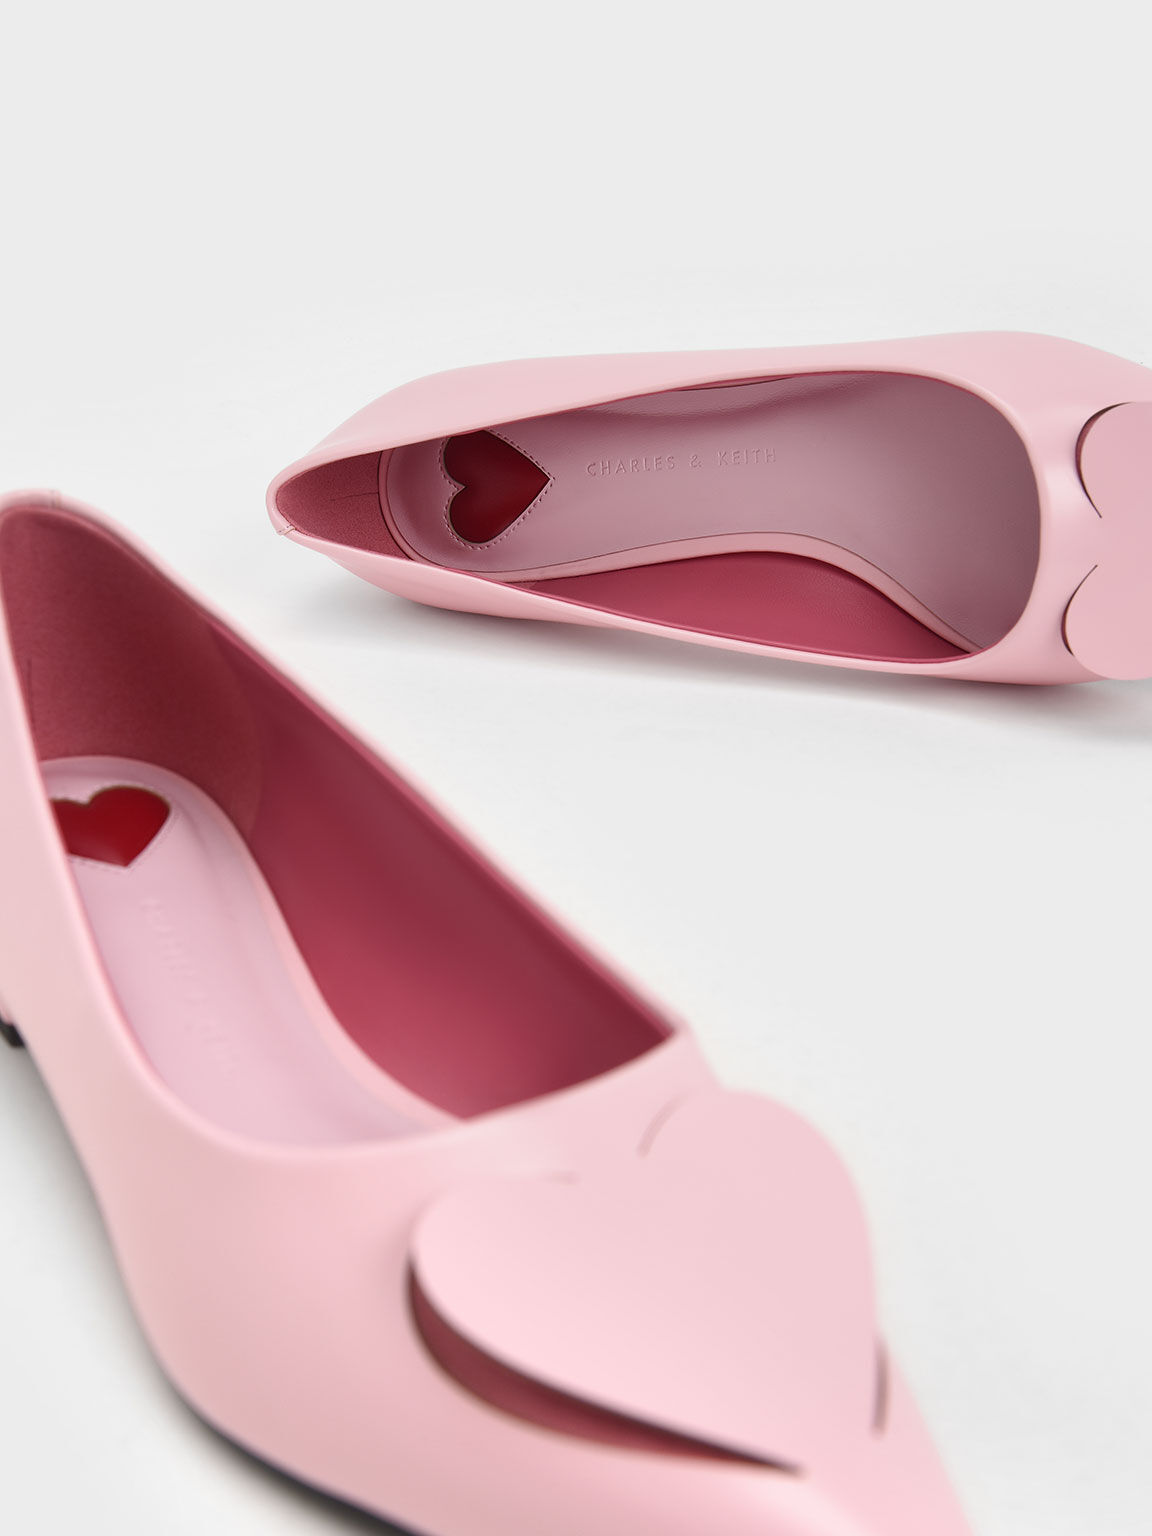 Amora 心型尖頭鞋, 粉紅色, hi-res